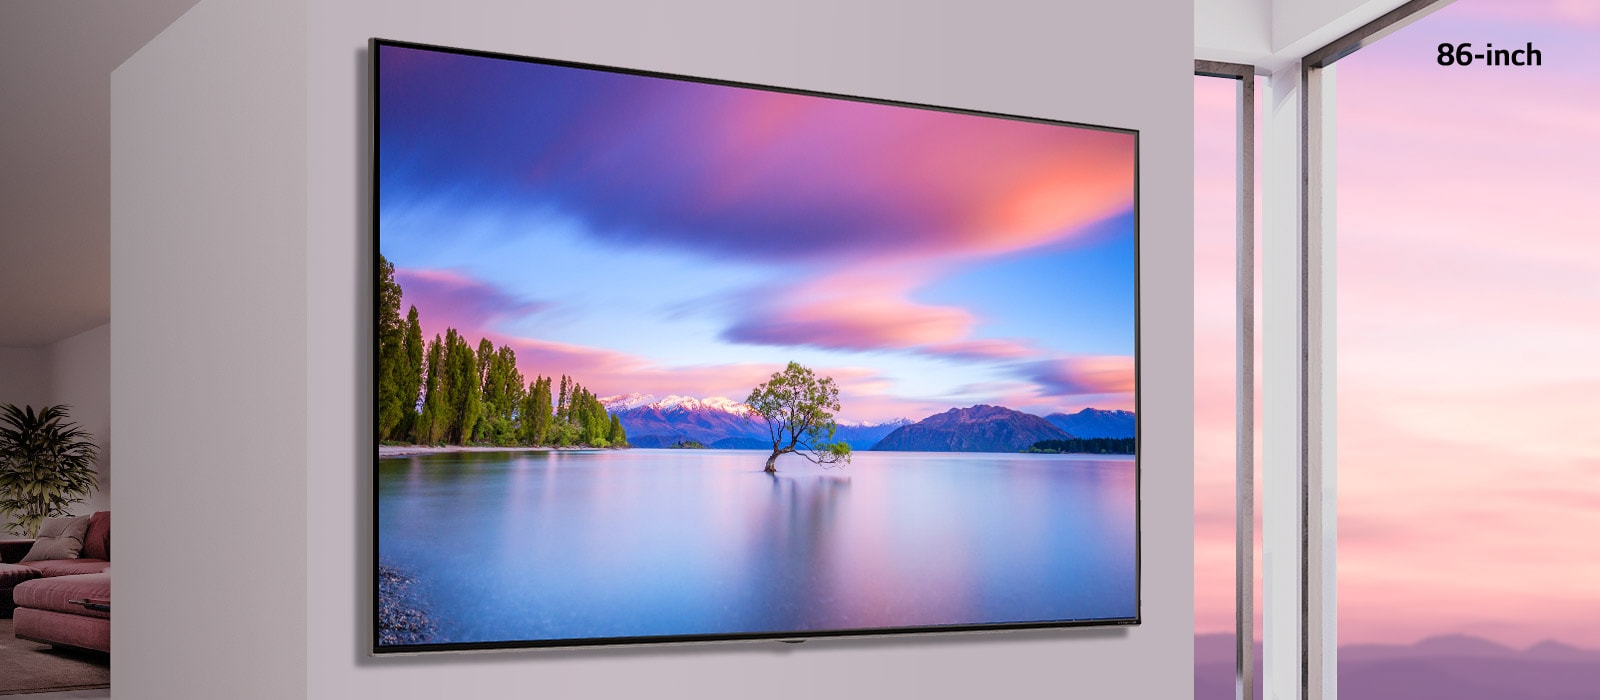 Телевізор LG з технологією NanoCell на чорному фоні. На екрані телевізора — автомобіль, який їде перед низьким гірським хребтом у воді, у якій відображається яскраве небо.